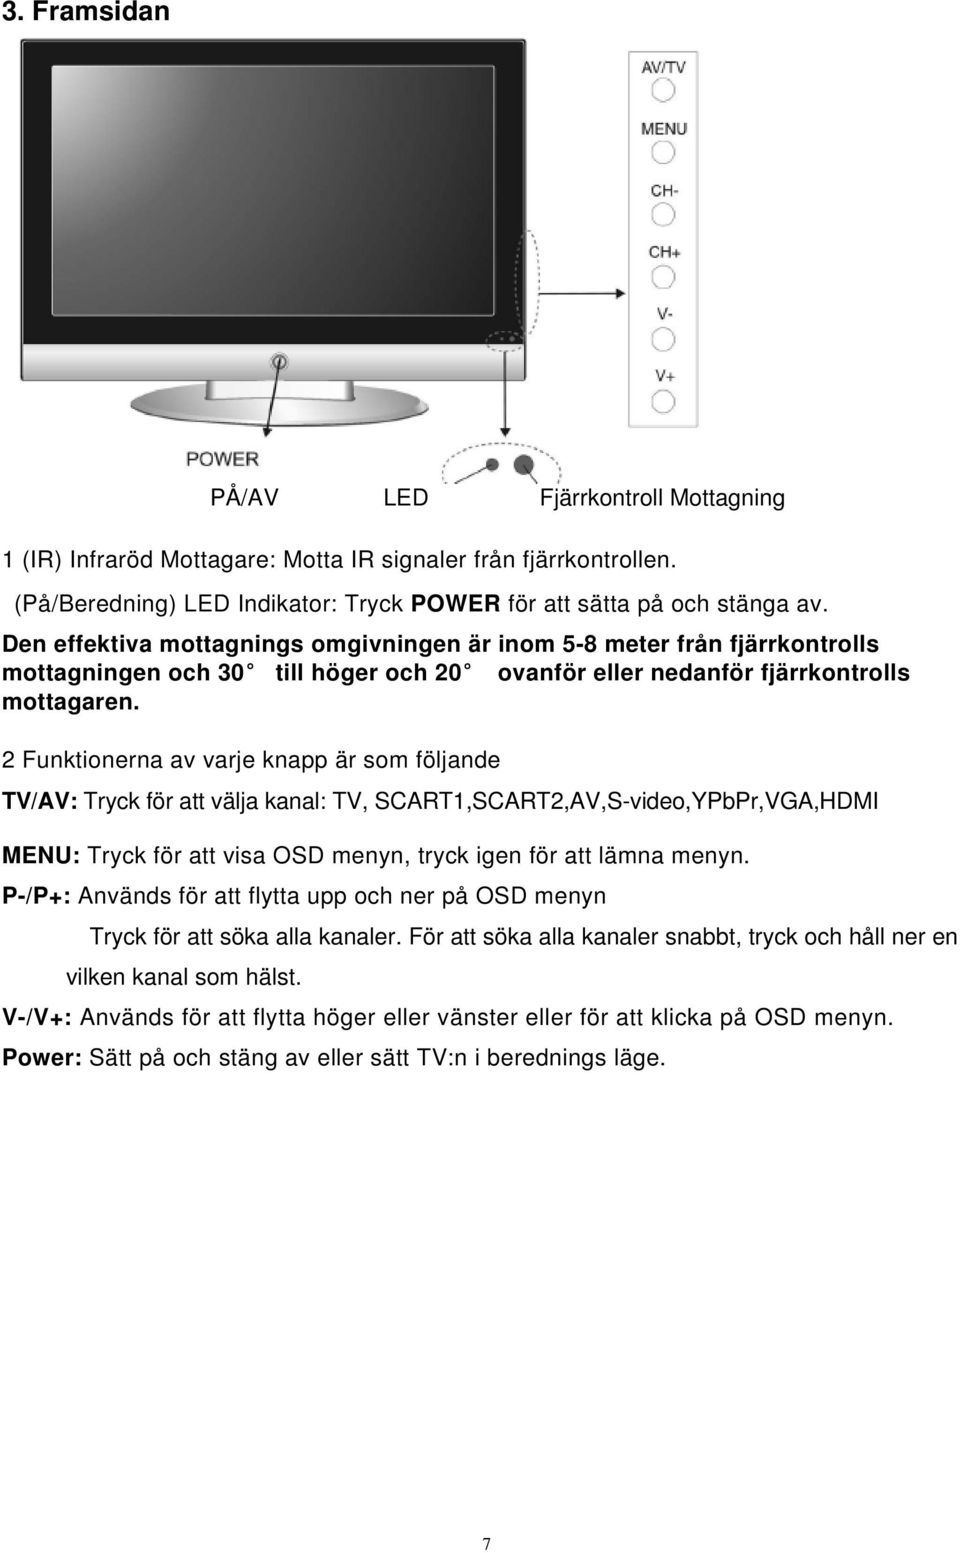 2 Funktionerna av varje knapp är som följande TV/AV: Tryck för att välja kanal: TV, SCART1,SCART2,AV,S-video,YPbPr,VGA,HDMI MENU: Tryck för att visa OSD menyn, tryck igen för att lämna menyn.